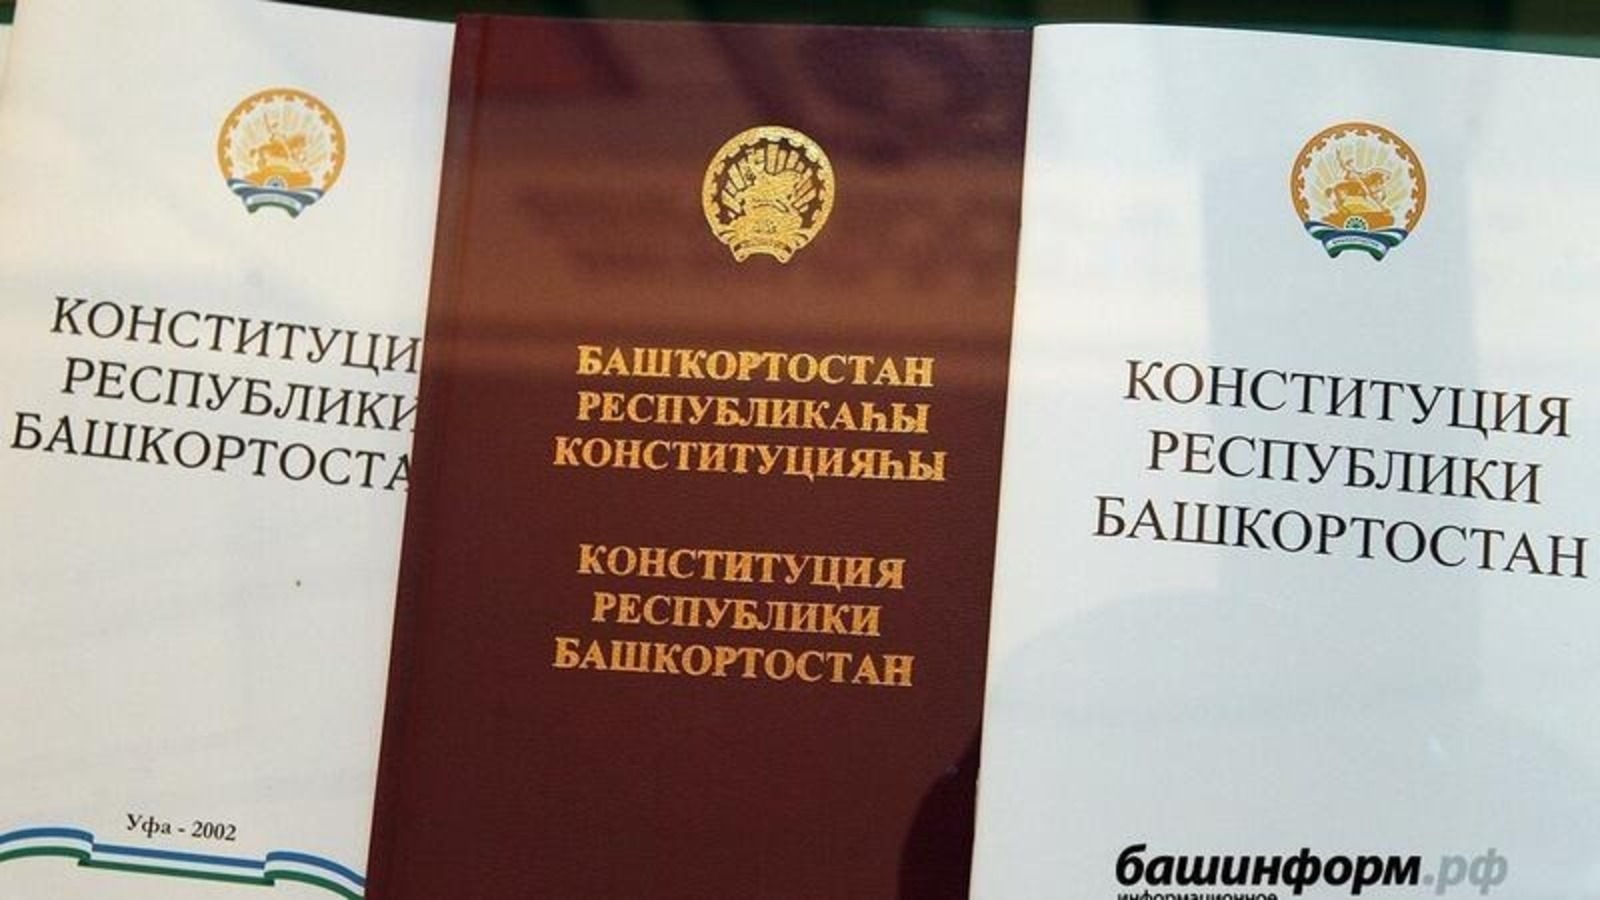 Сегодня отмечается День Конституции Башкортостана